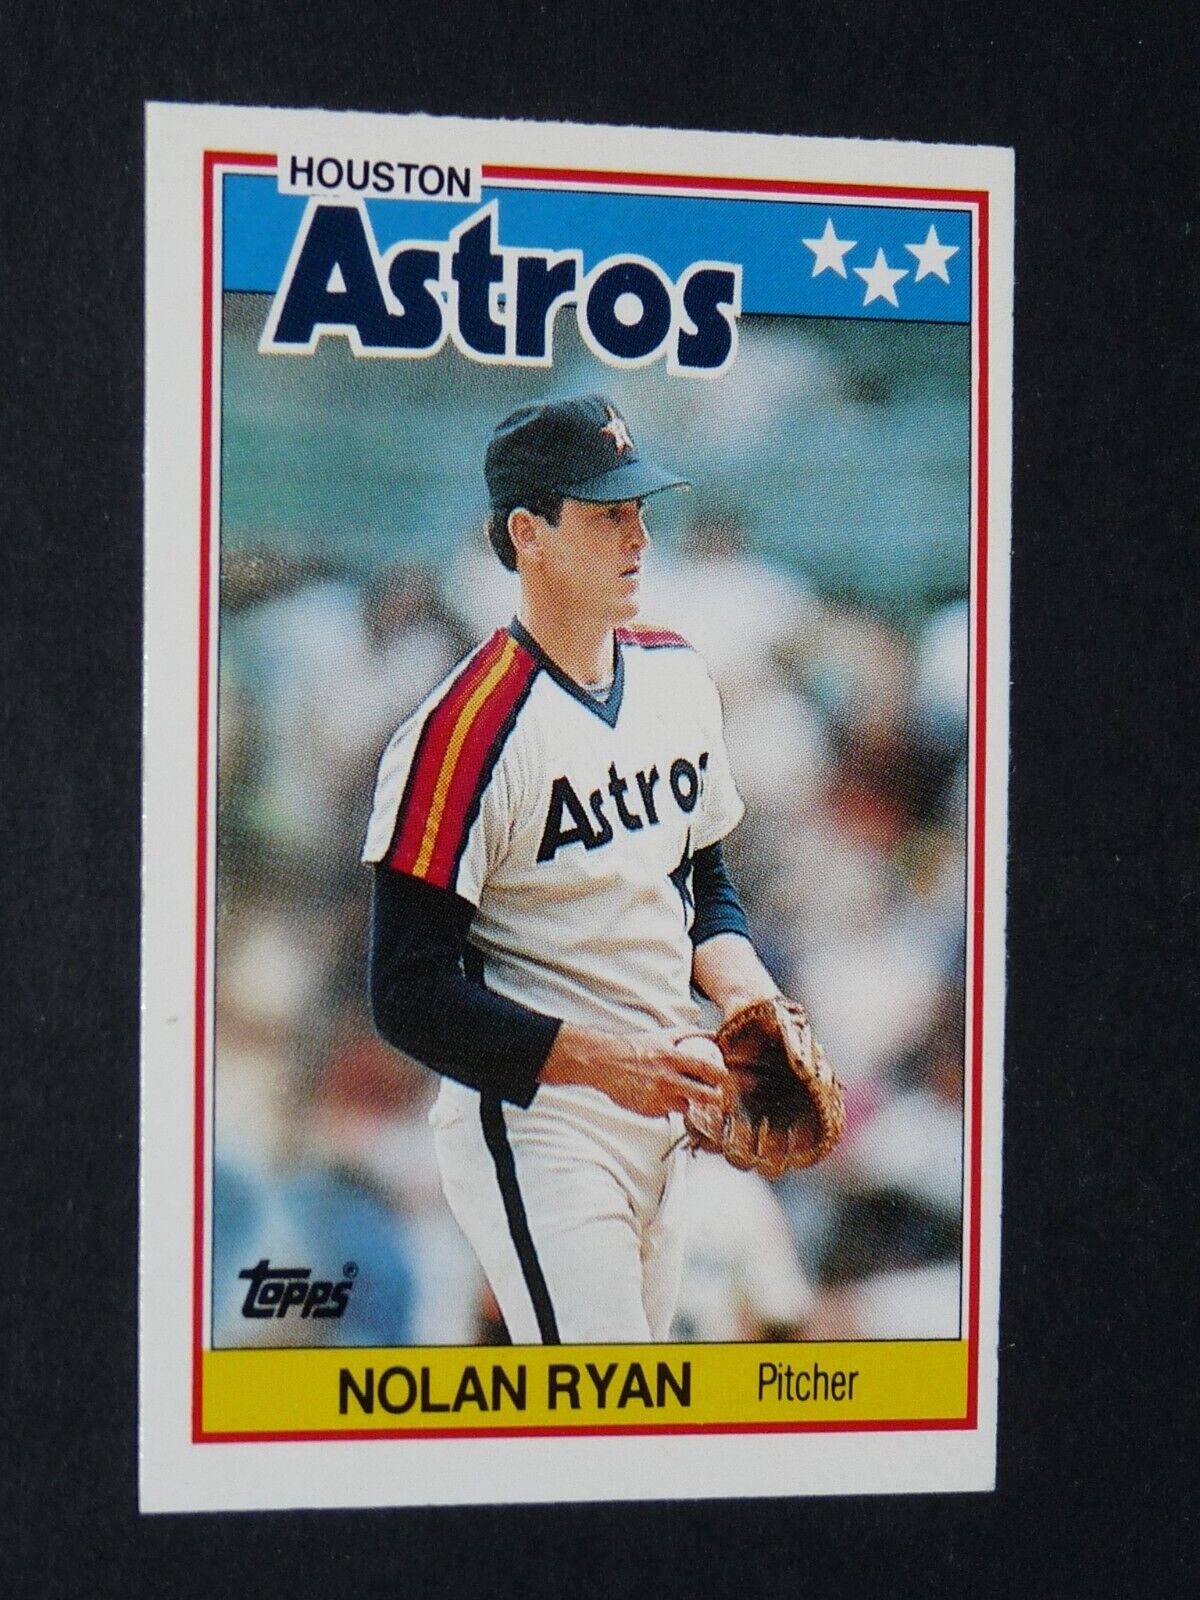 1988 TOPPS MINI BASEBALL CARD #62 NOLAN RYAN HOUSTON ASTROS